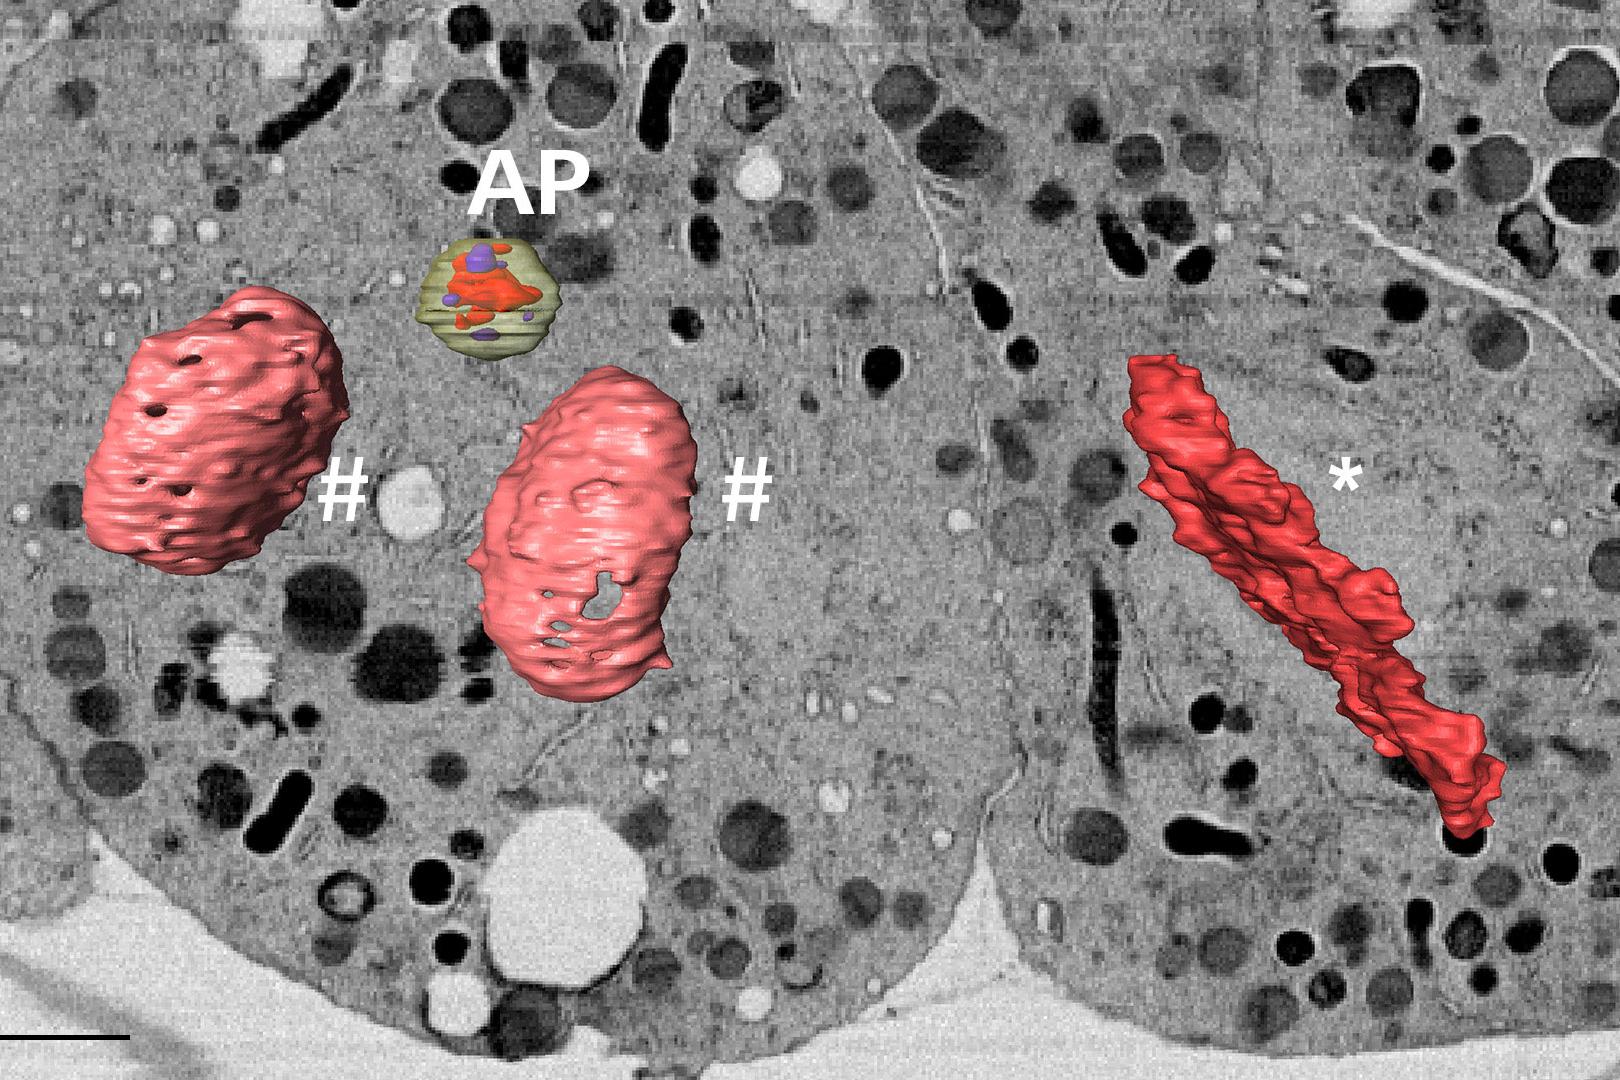 Rekonstruktion von Zellstrukturen wie einem Autophagosom (AP) oder dem Genom in verschiedenen mitotischen Phasen (*: Zelle in der Metaphase; #: Zelle in der Telophase).